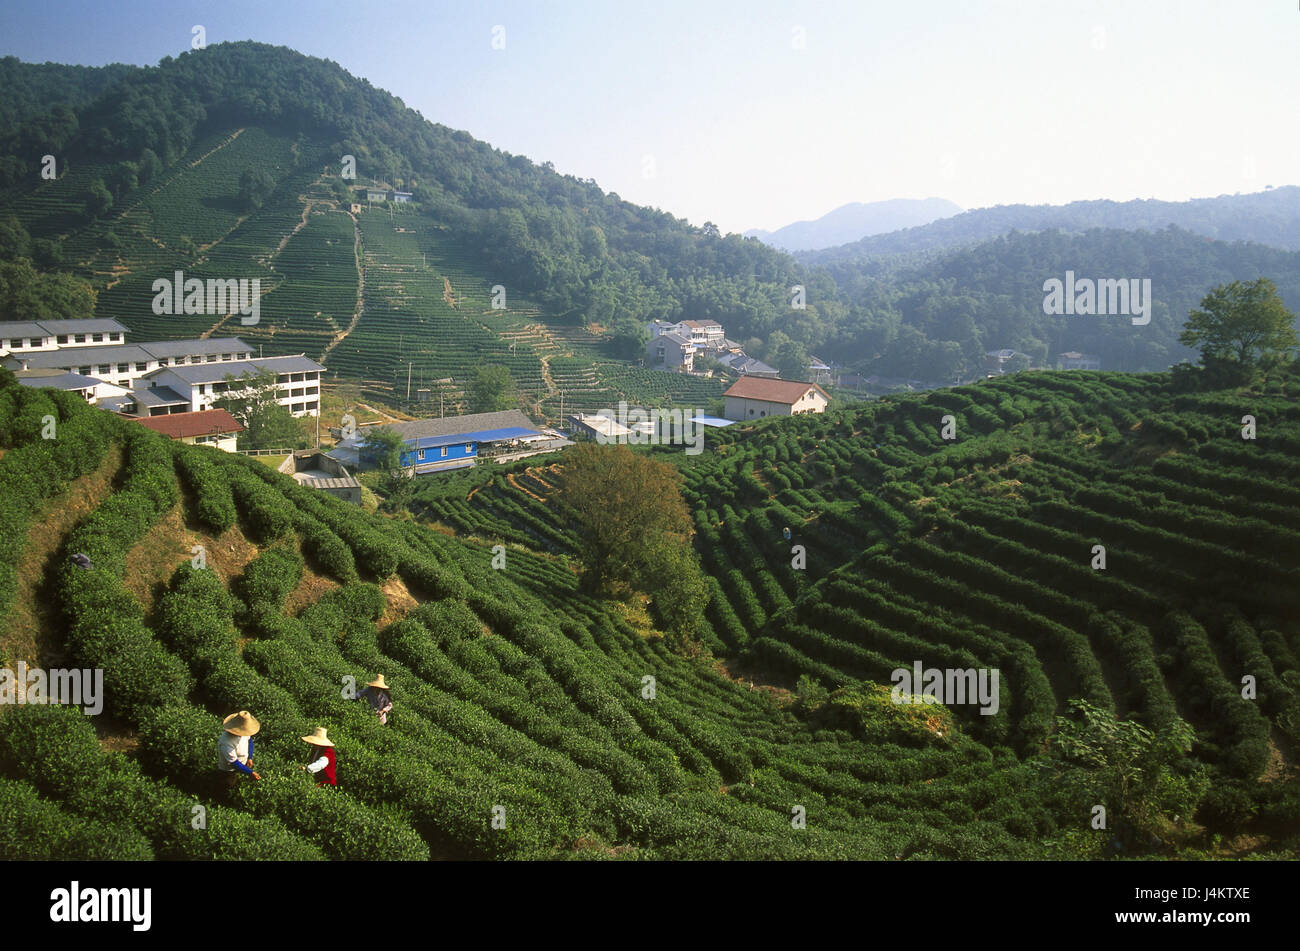 China, en la provincia de Zhejiang, Hangzhou, nostalgia, campos de introducción de Asia, Asia Oriental, la economía, la agricultura, el paisaje, la colina, colina, paisajes, montañas, valle, colgantes, anexo, té, té